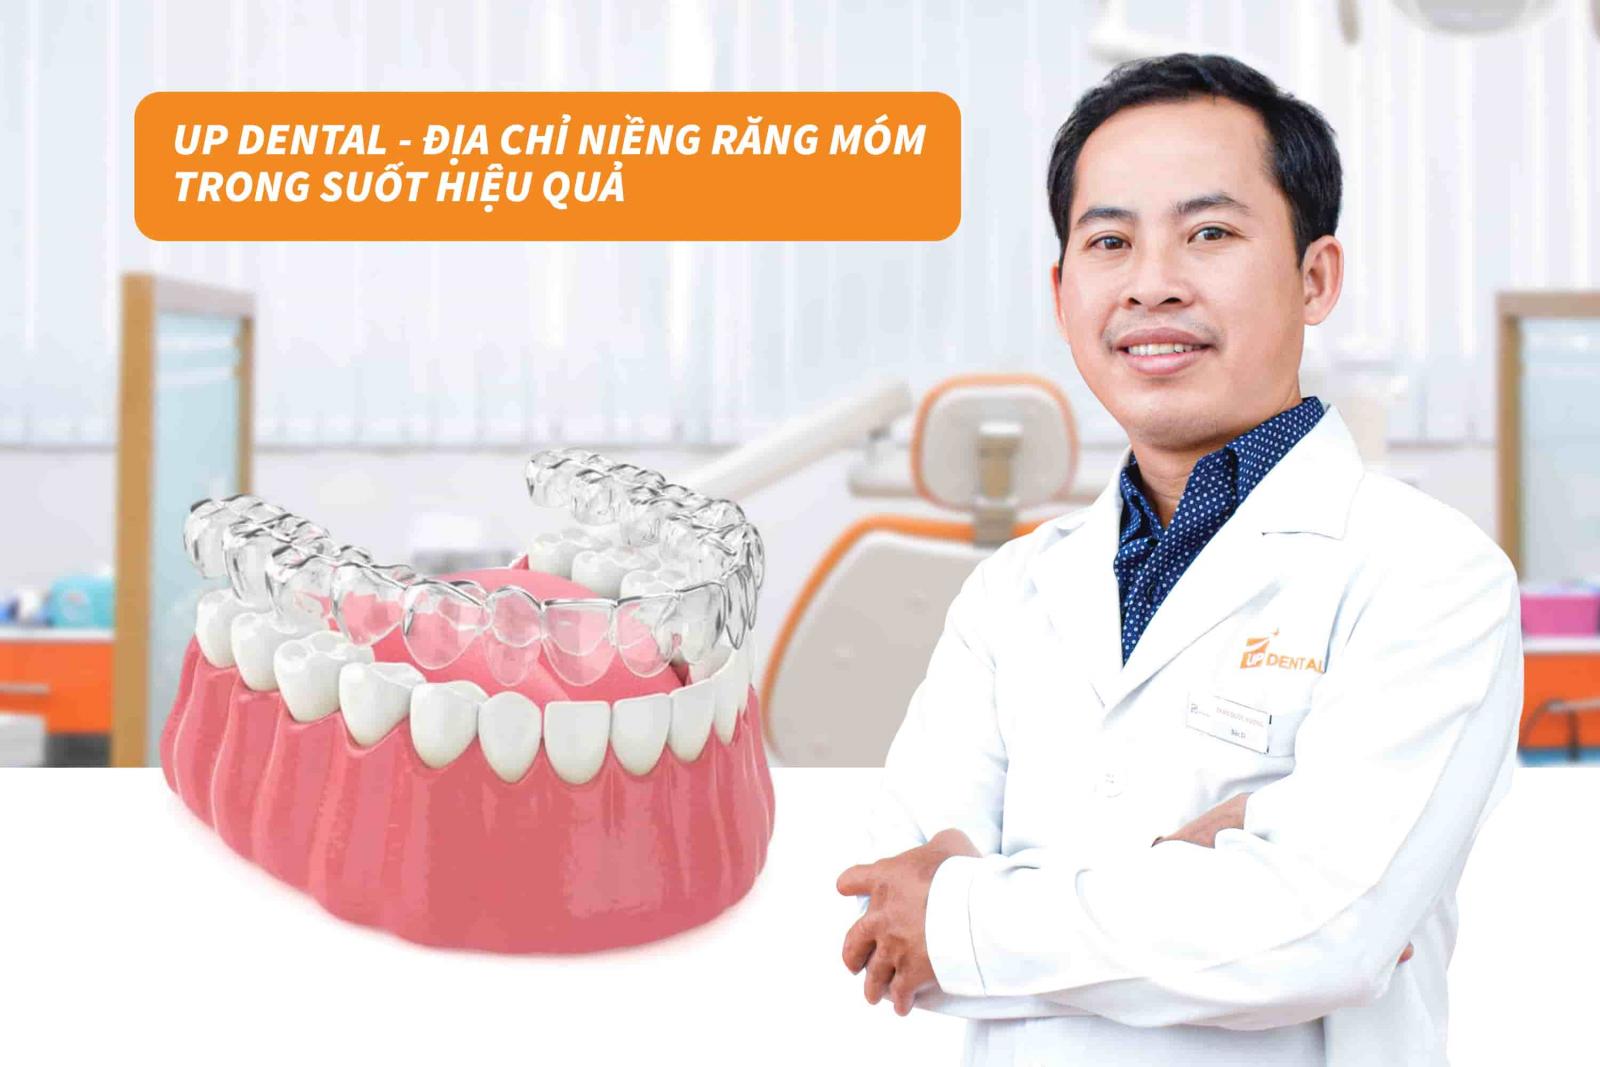 Up Dental - Địa chỉ niềng răng móm trong suốt hiệu quả